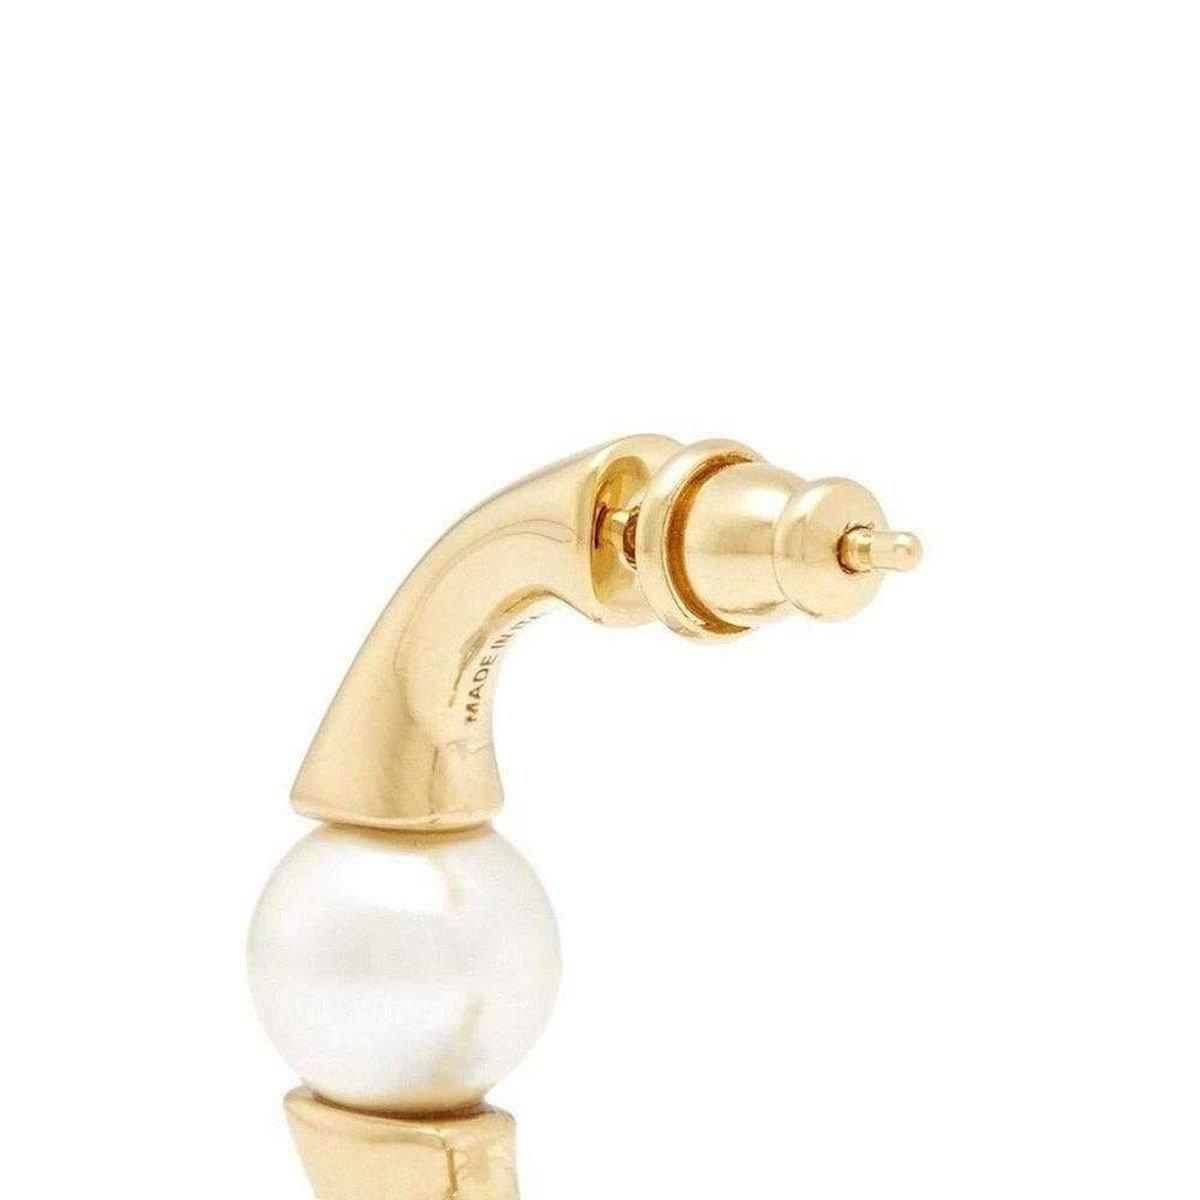  ChloeDarcey Swarovski Pearls Plated Brass Half Hoop Earrings - Runway Catalog